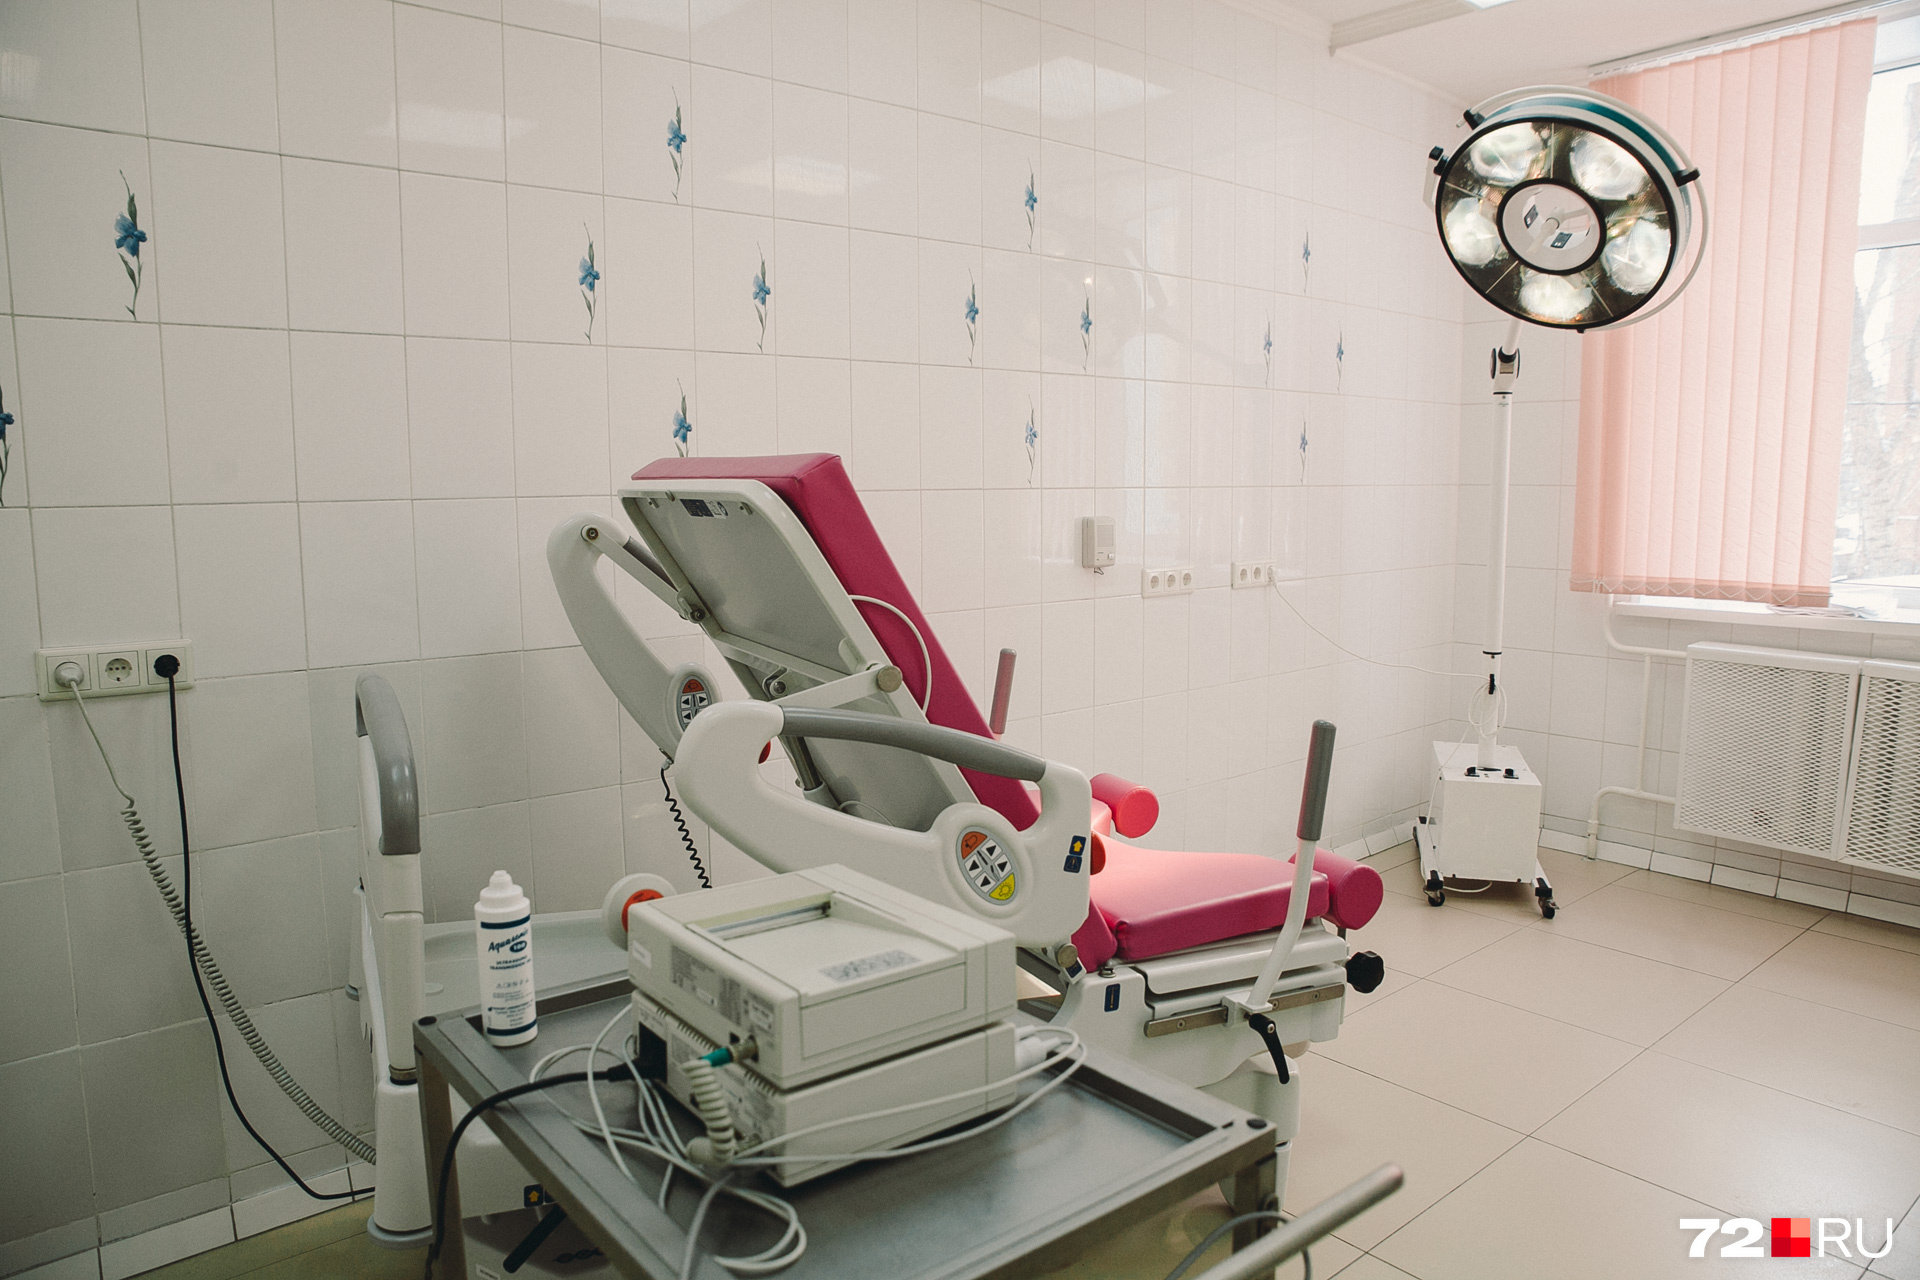 Родовой блок оснащен всеми необходимыми предметами и инструментами — от удобной кровати до мониторов для наблюдения пациентки 